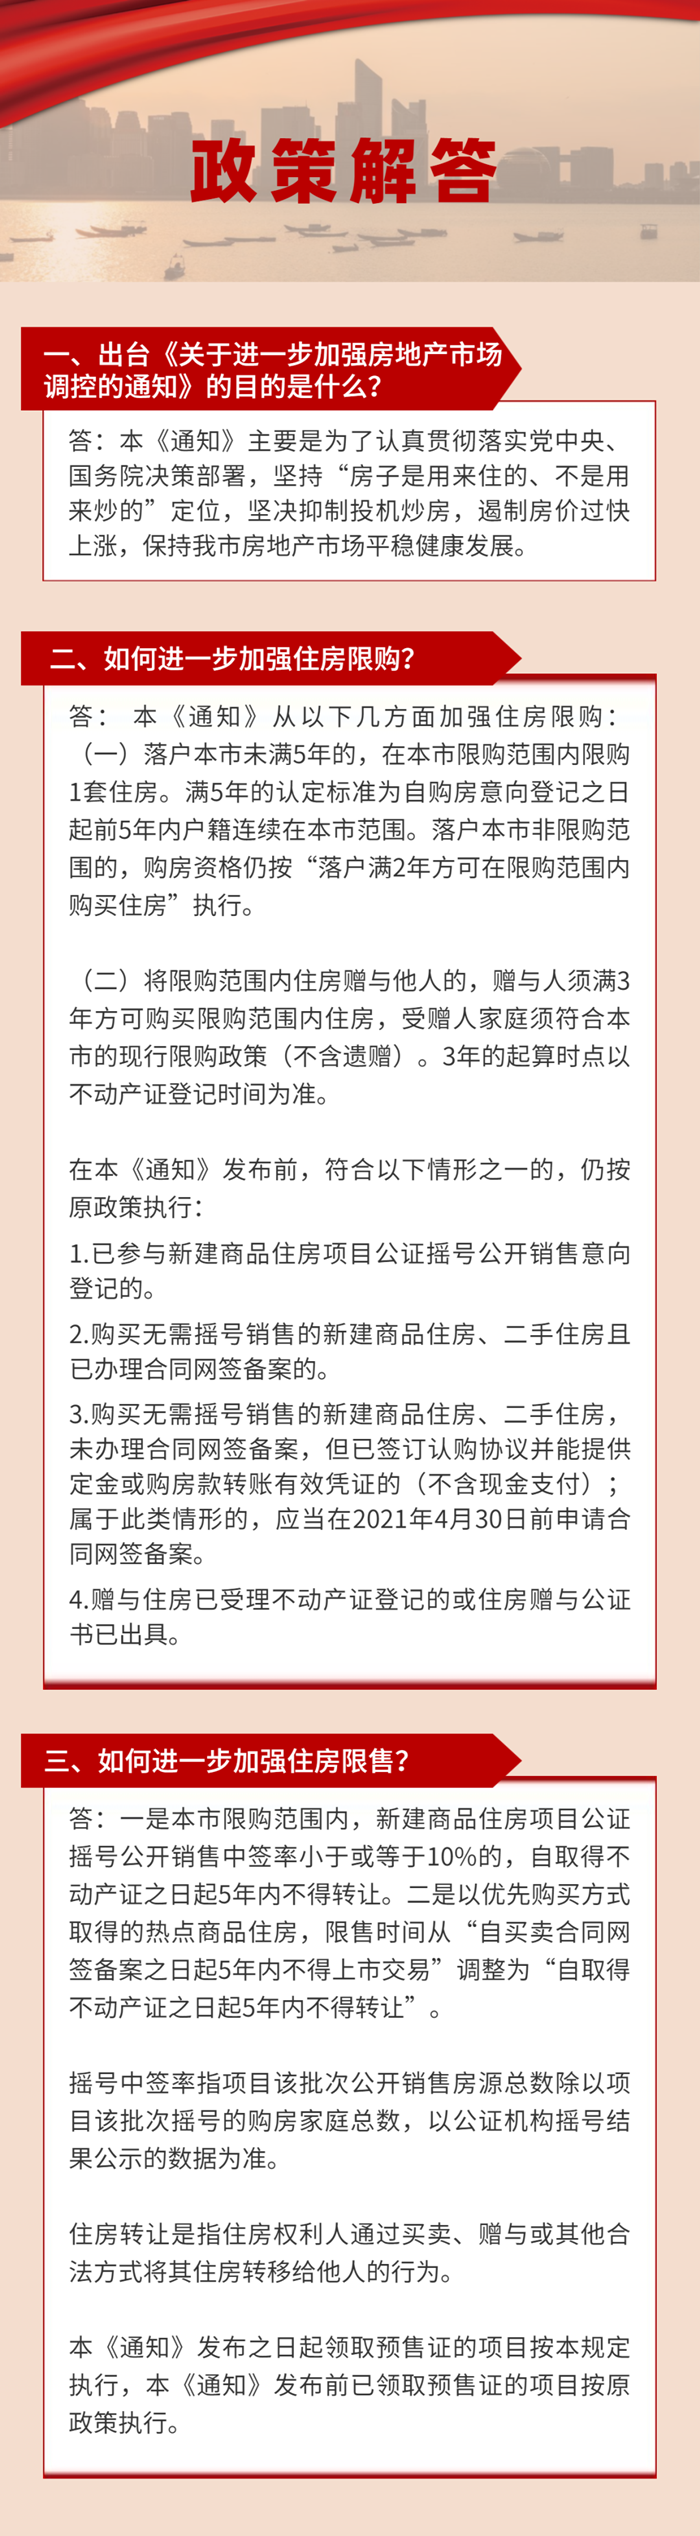 好消息！因城施策，杭州进一步加强房地产市场调控！湖州楼市会不会是另一翻天地？